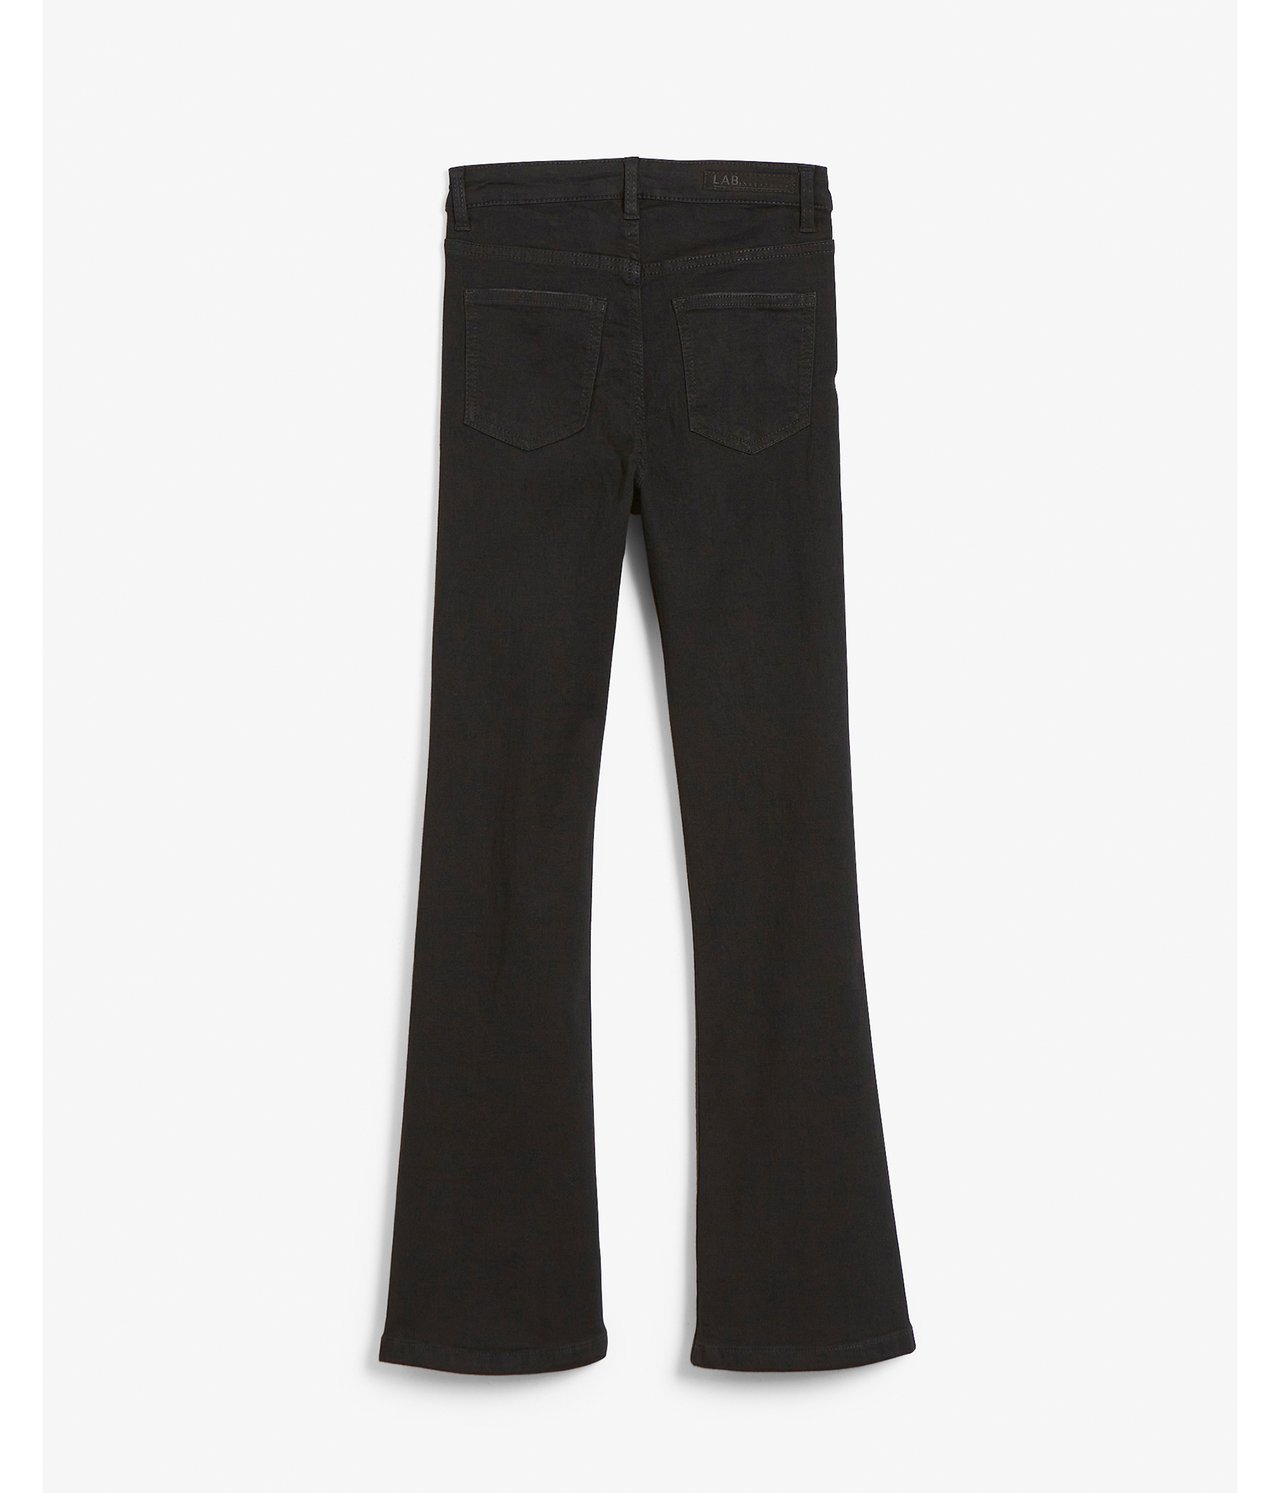 Jeans bootcut high waist stretch - Musta - 7